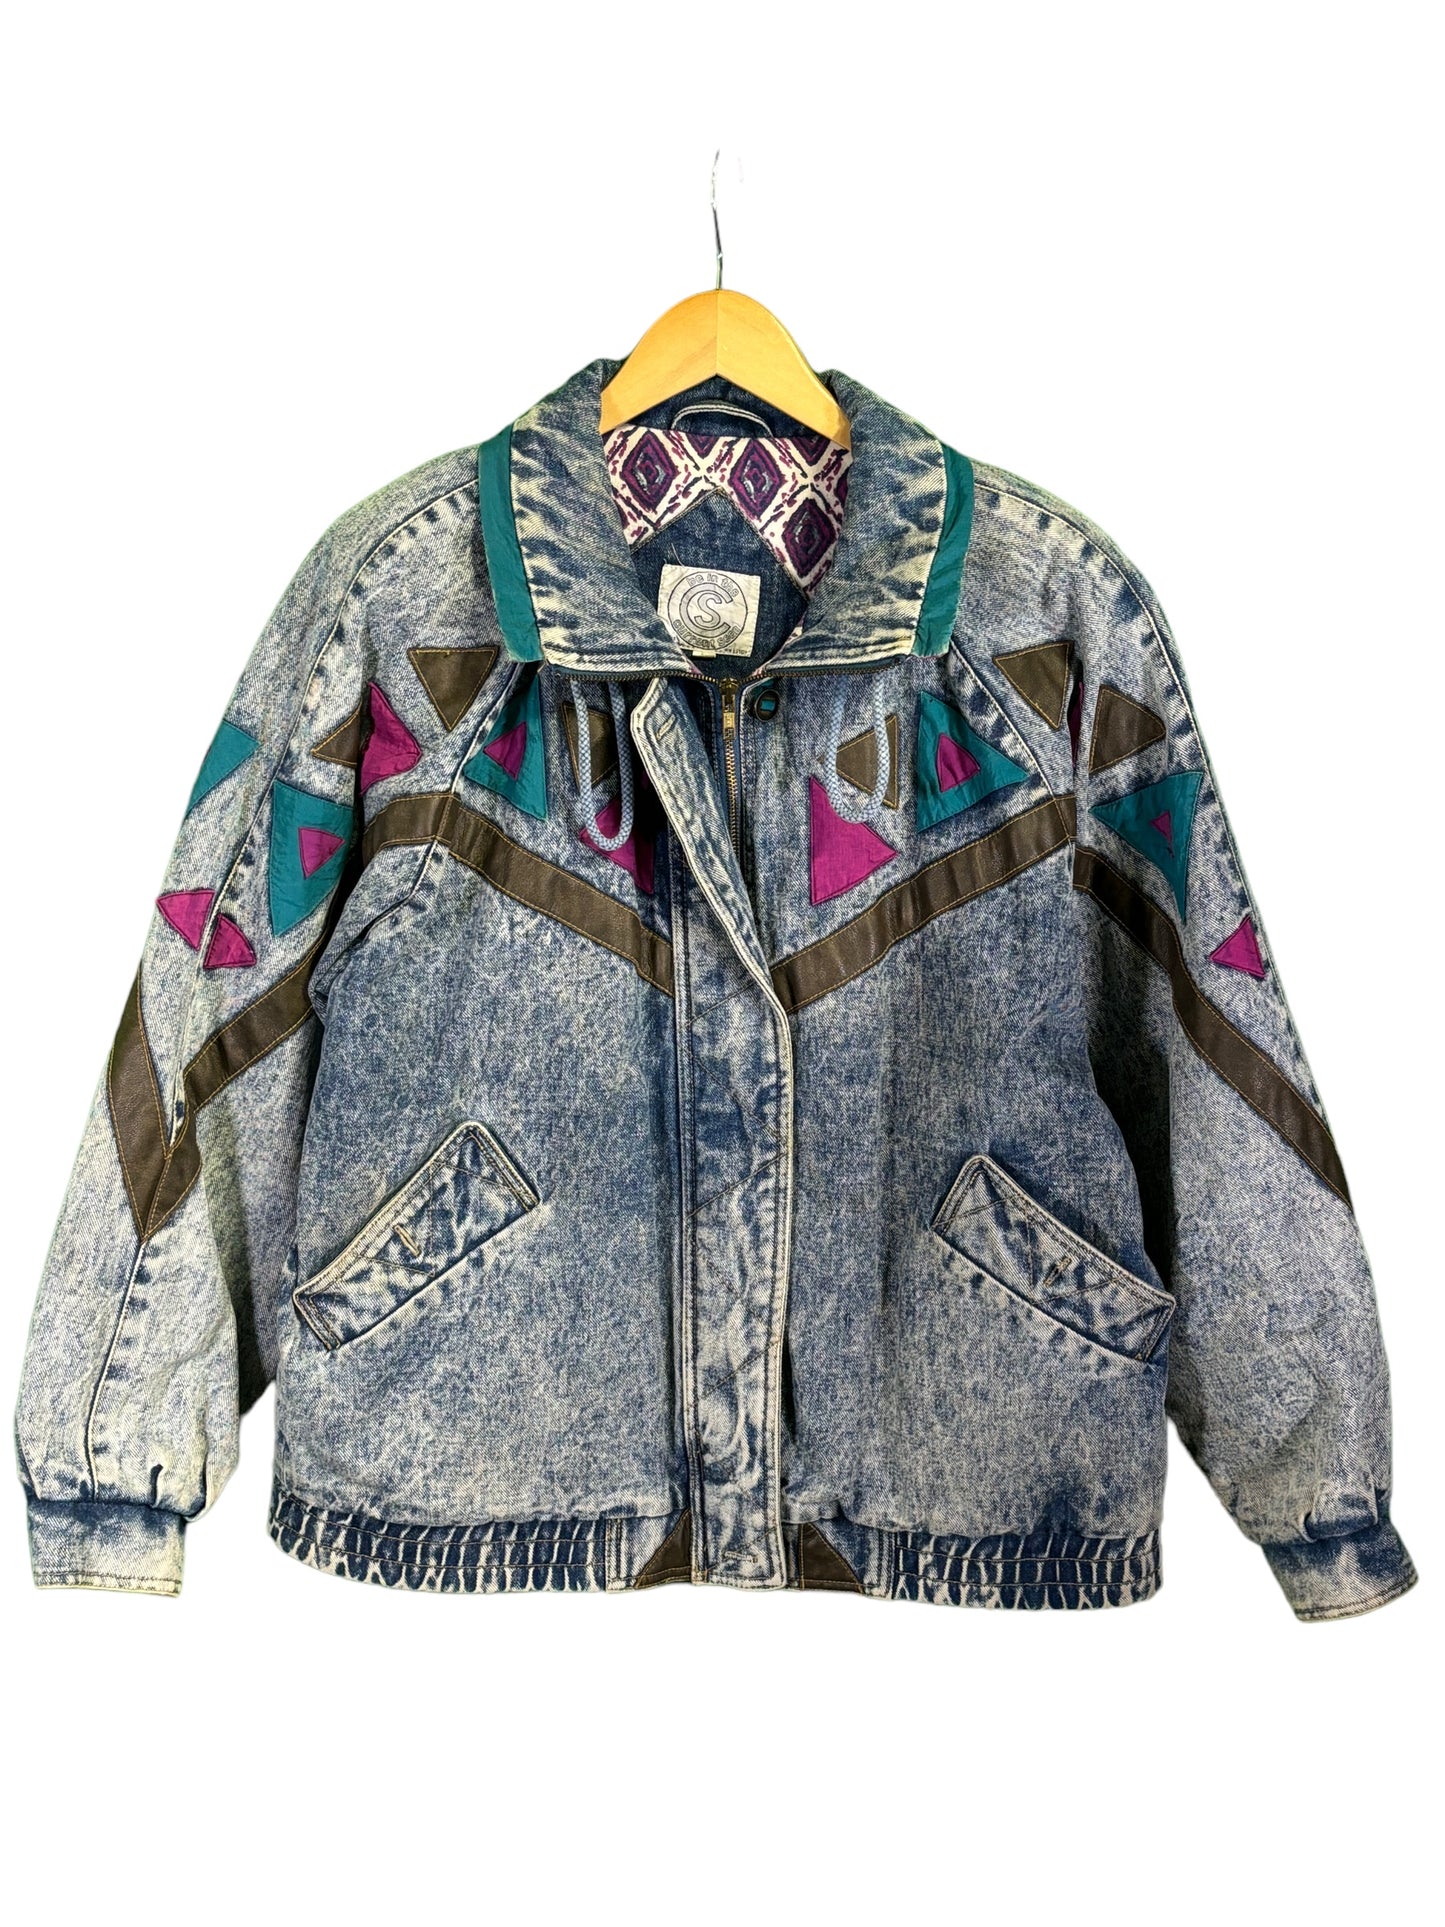 Vintage 80's Current Seen Denim Aztec Style Bomber Jacket Size Medium